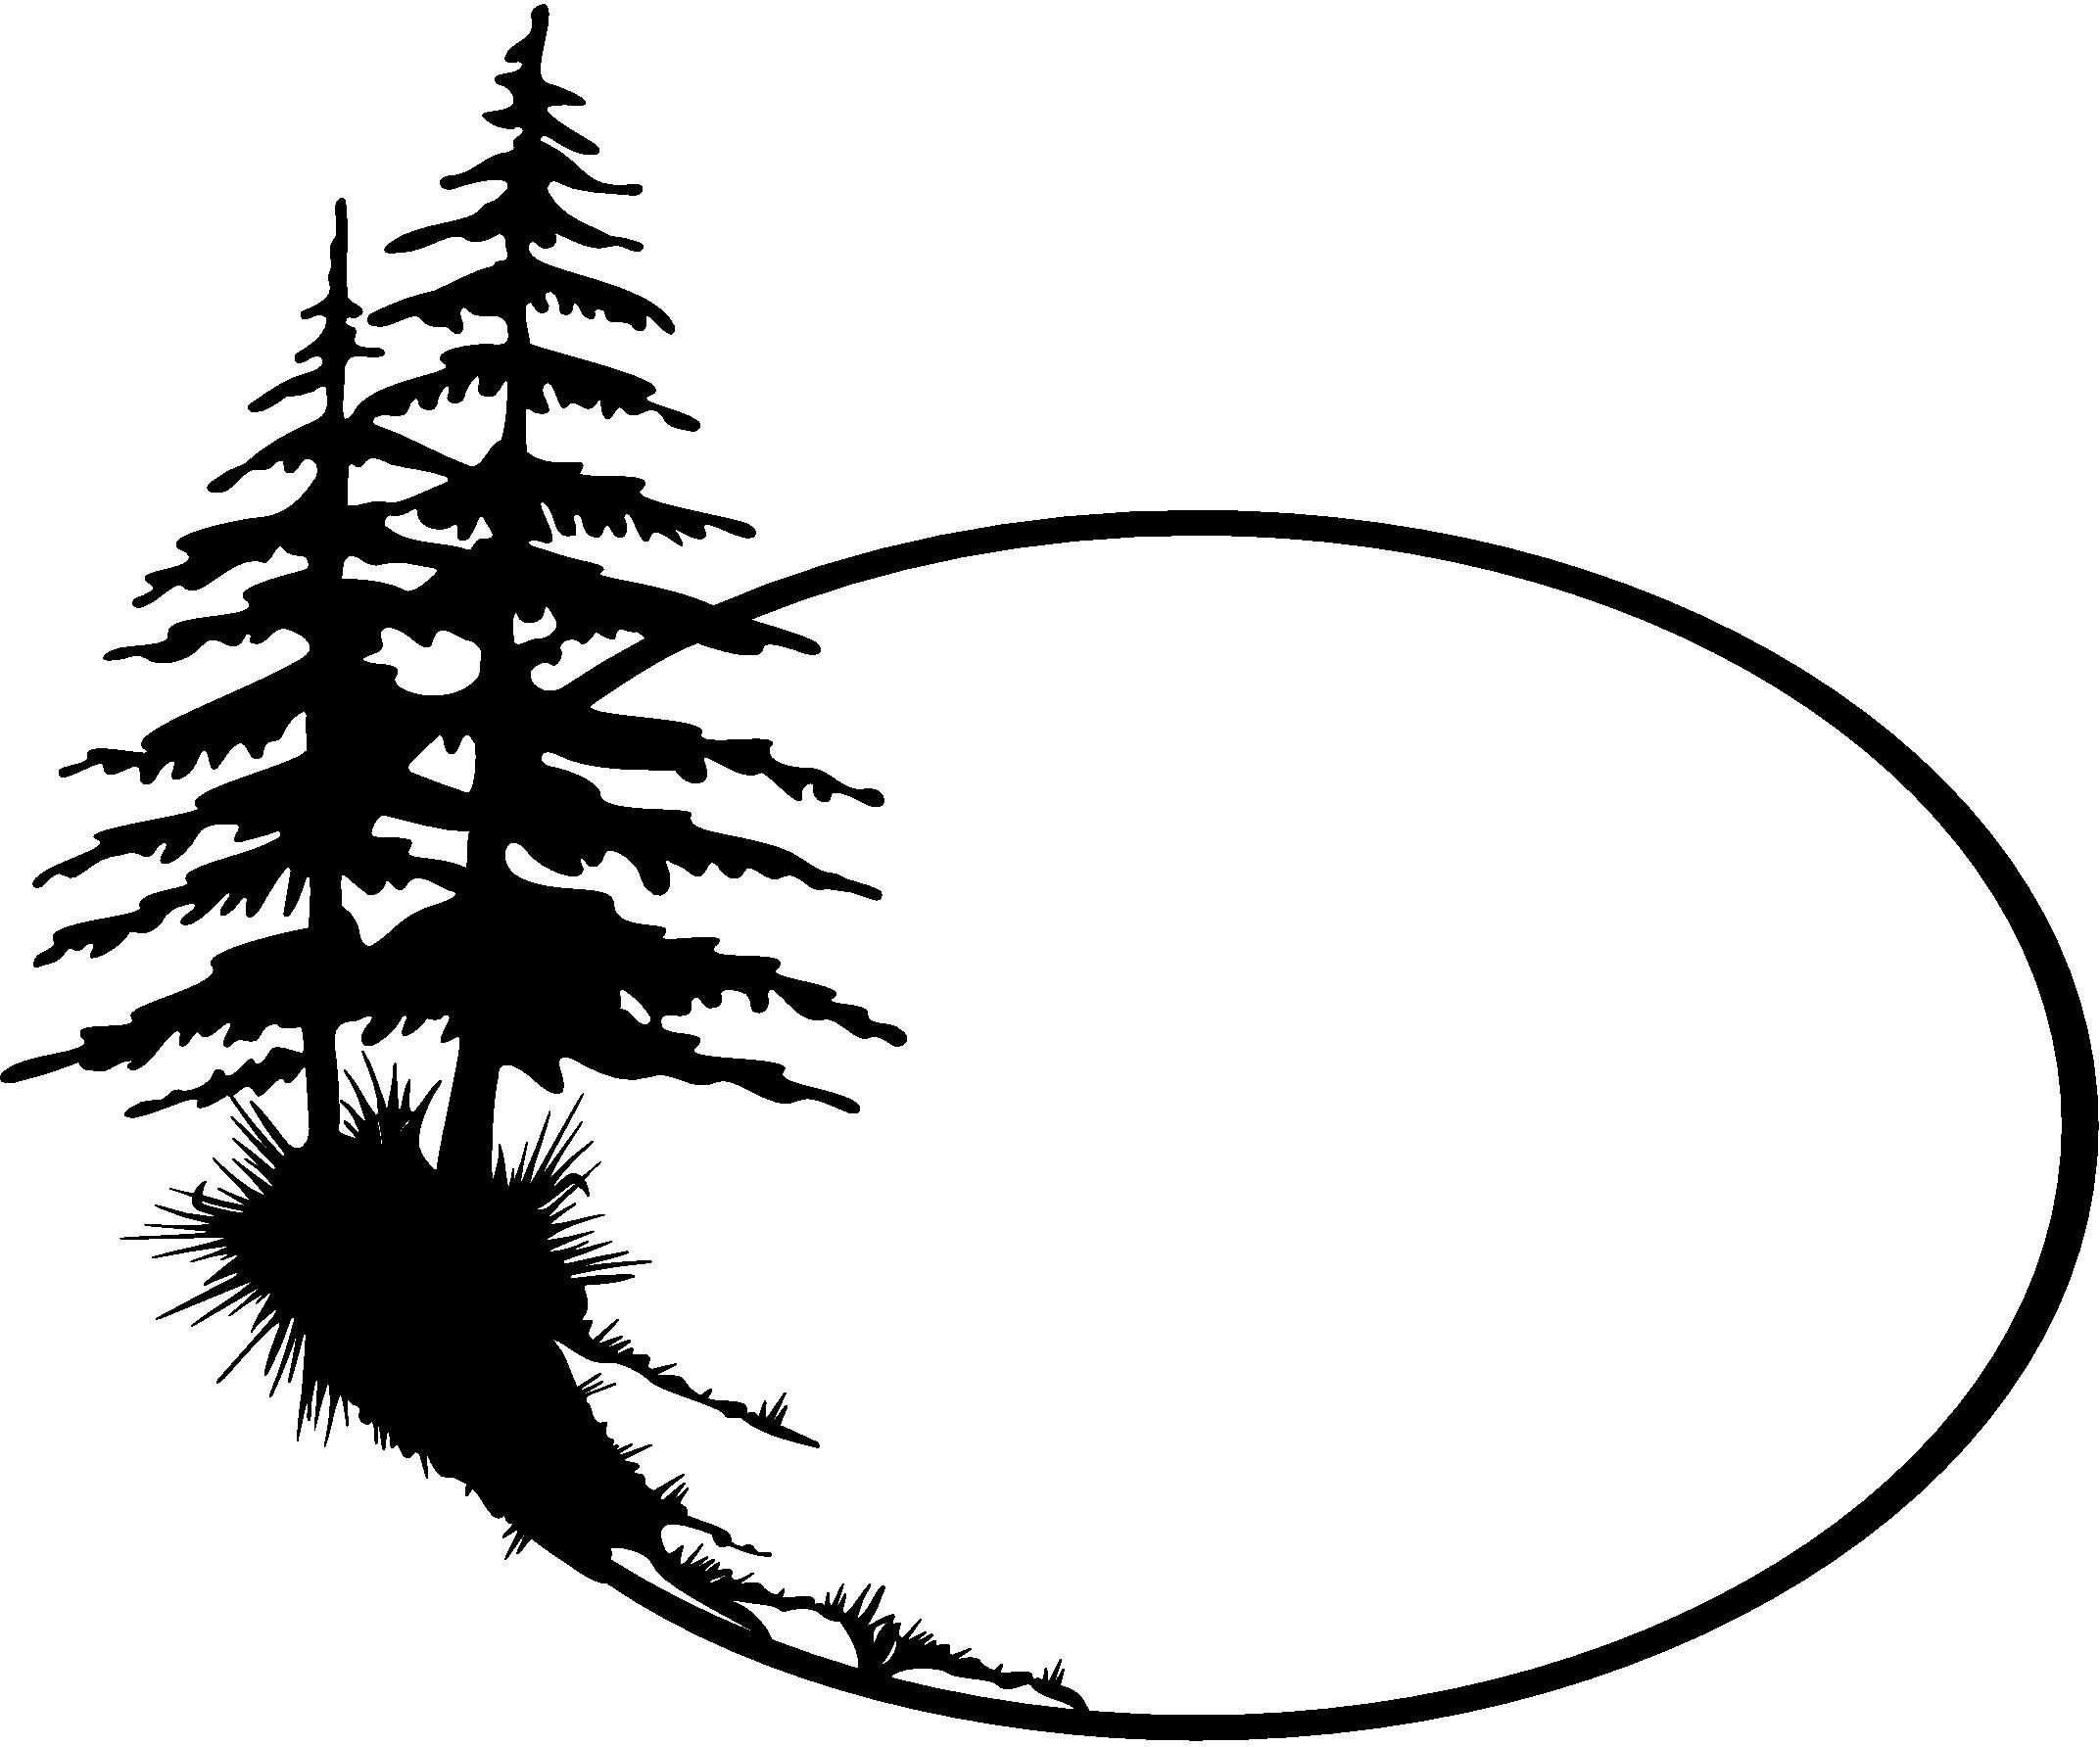 Pine tree silhouette.